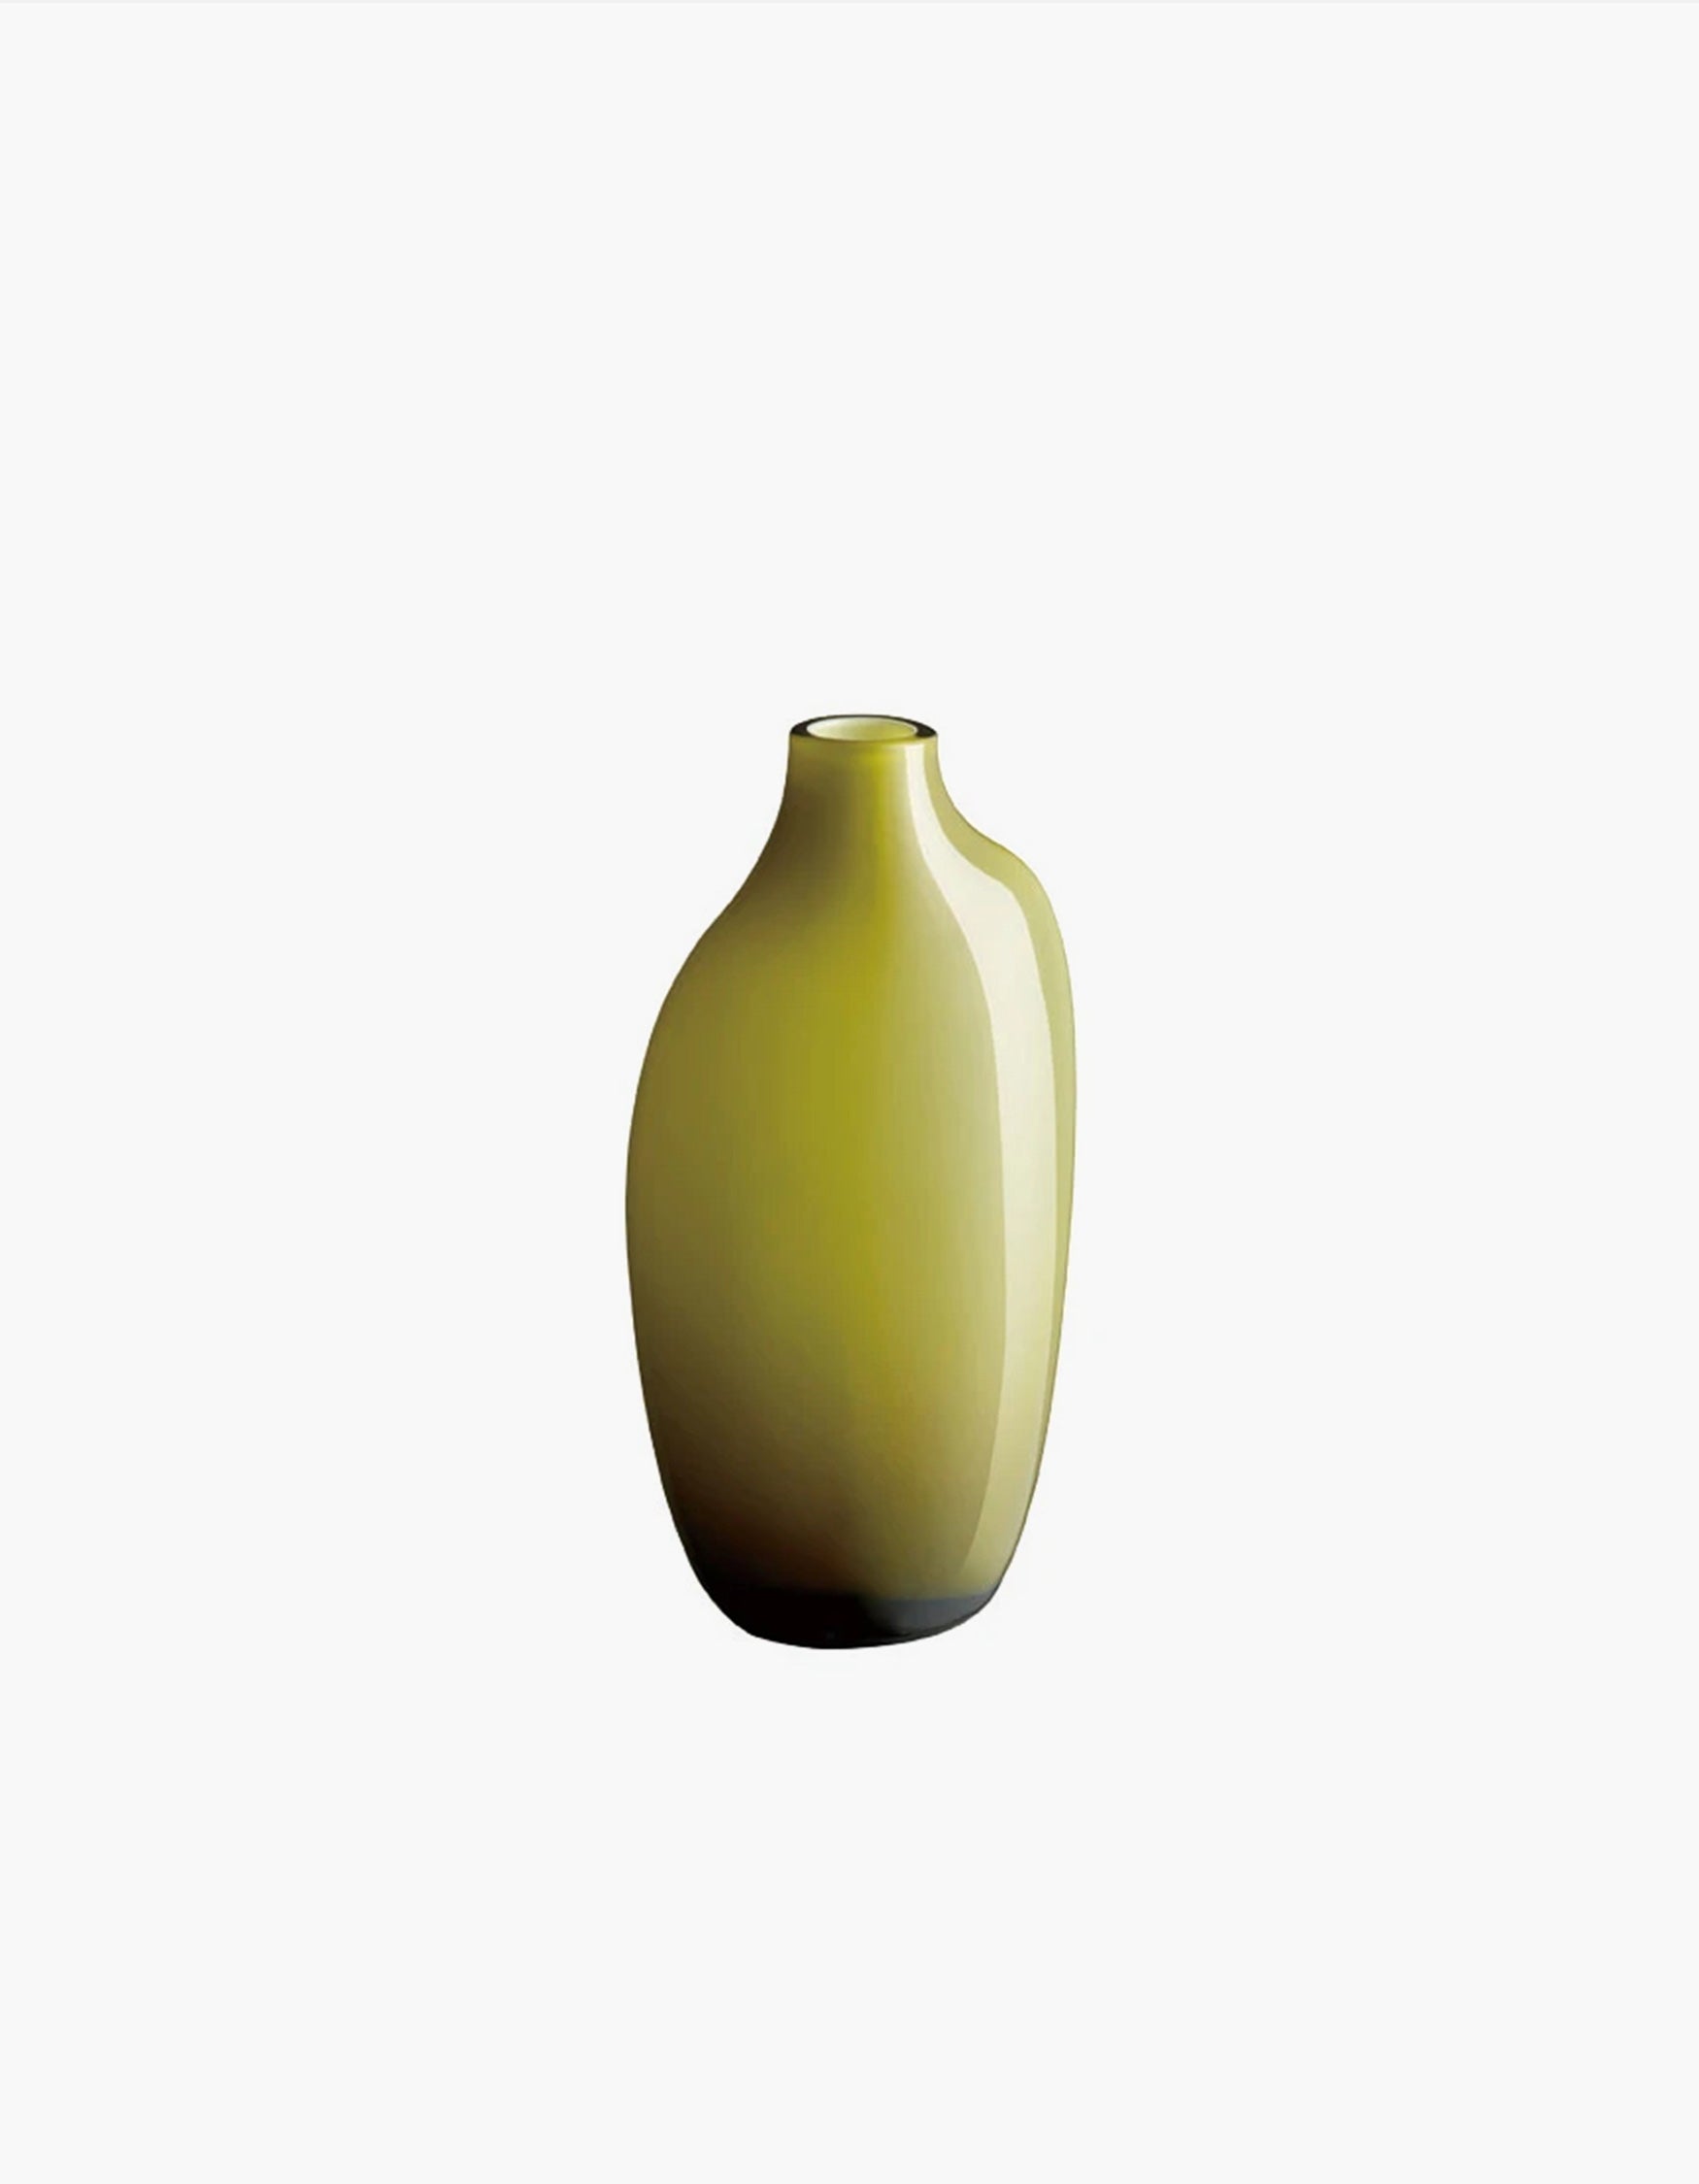 Sacco Vase No. 3